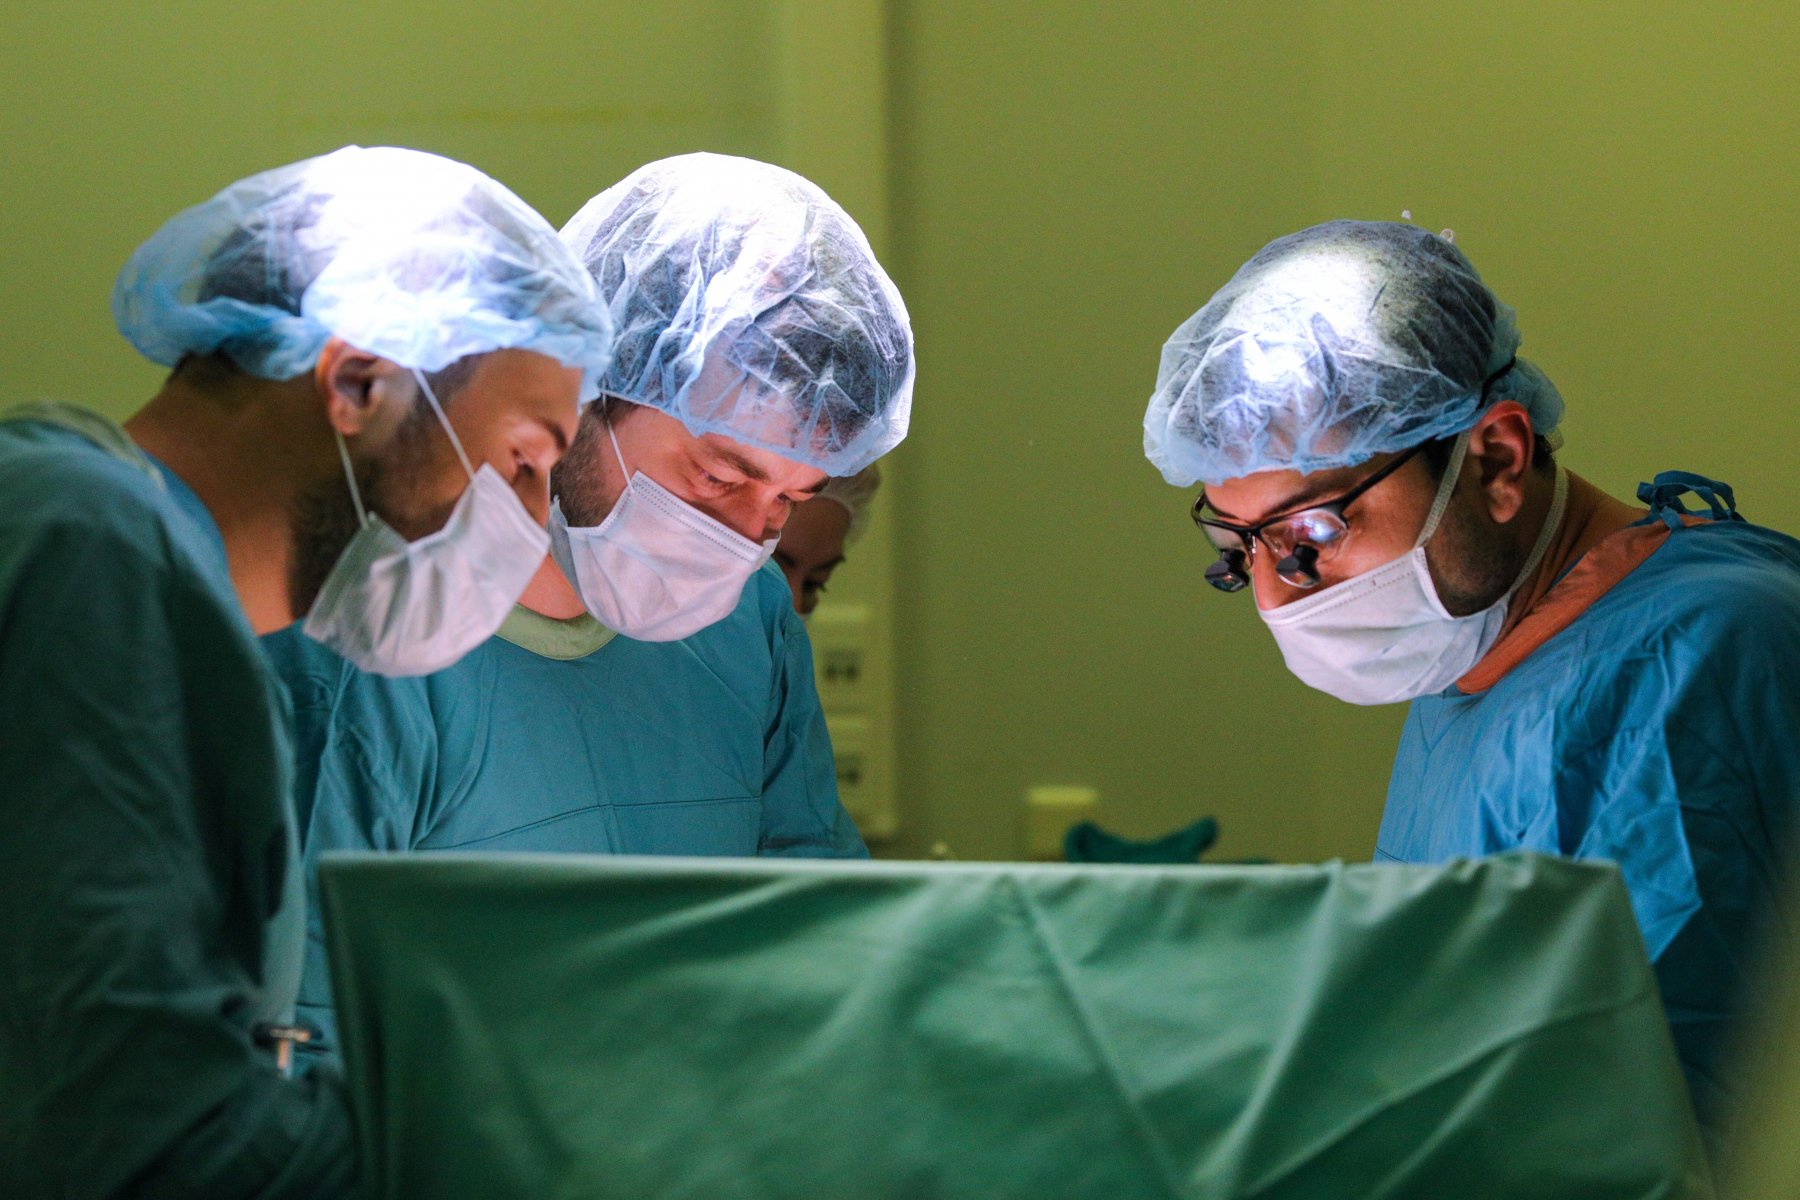 Росздравнадзор проверит столичную клинику пластической хирургии, где погибла пациентка